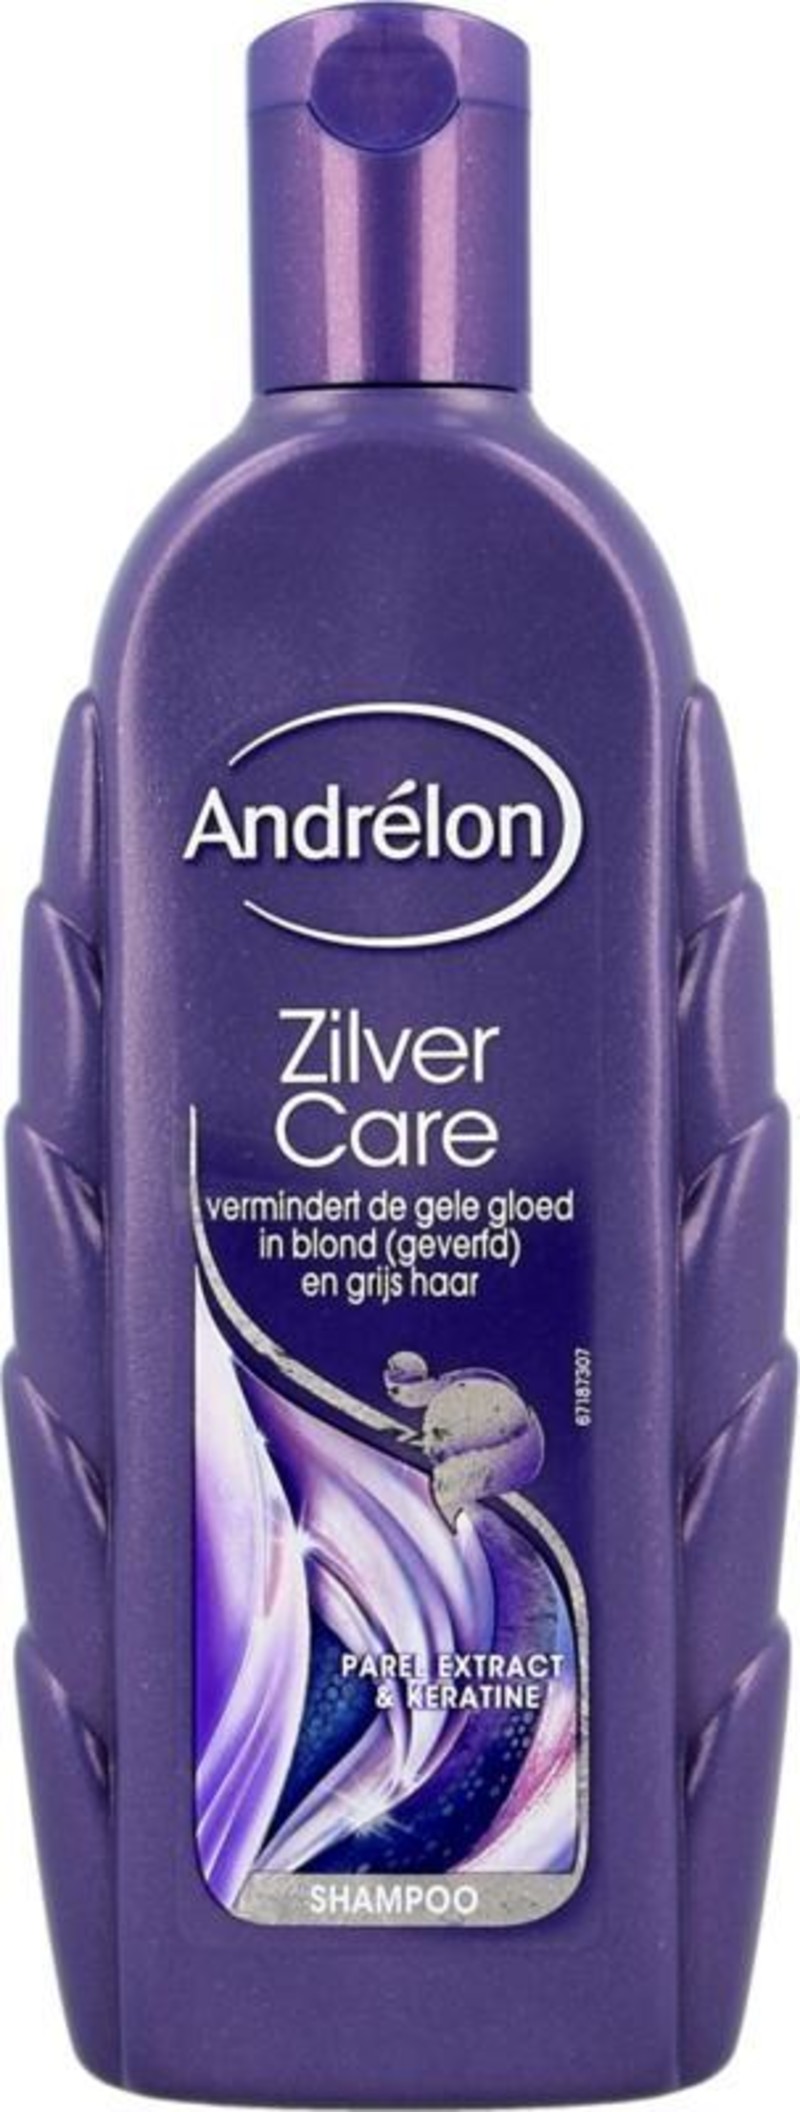 vod regisseur Geval Shampoo zilver care | Andrelon Super! - We Are Eves: eerlijke cosmetica  reviews.